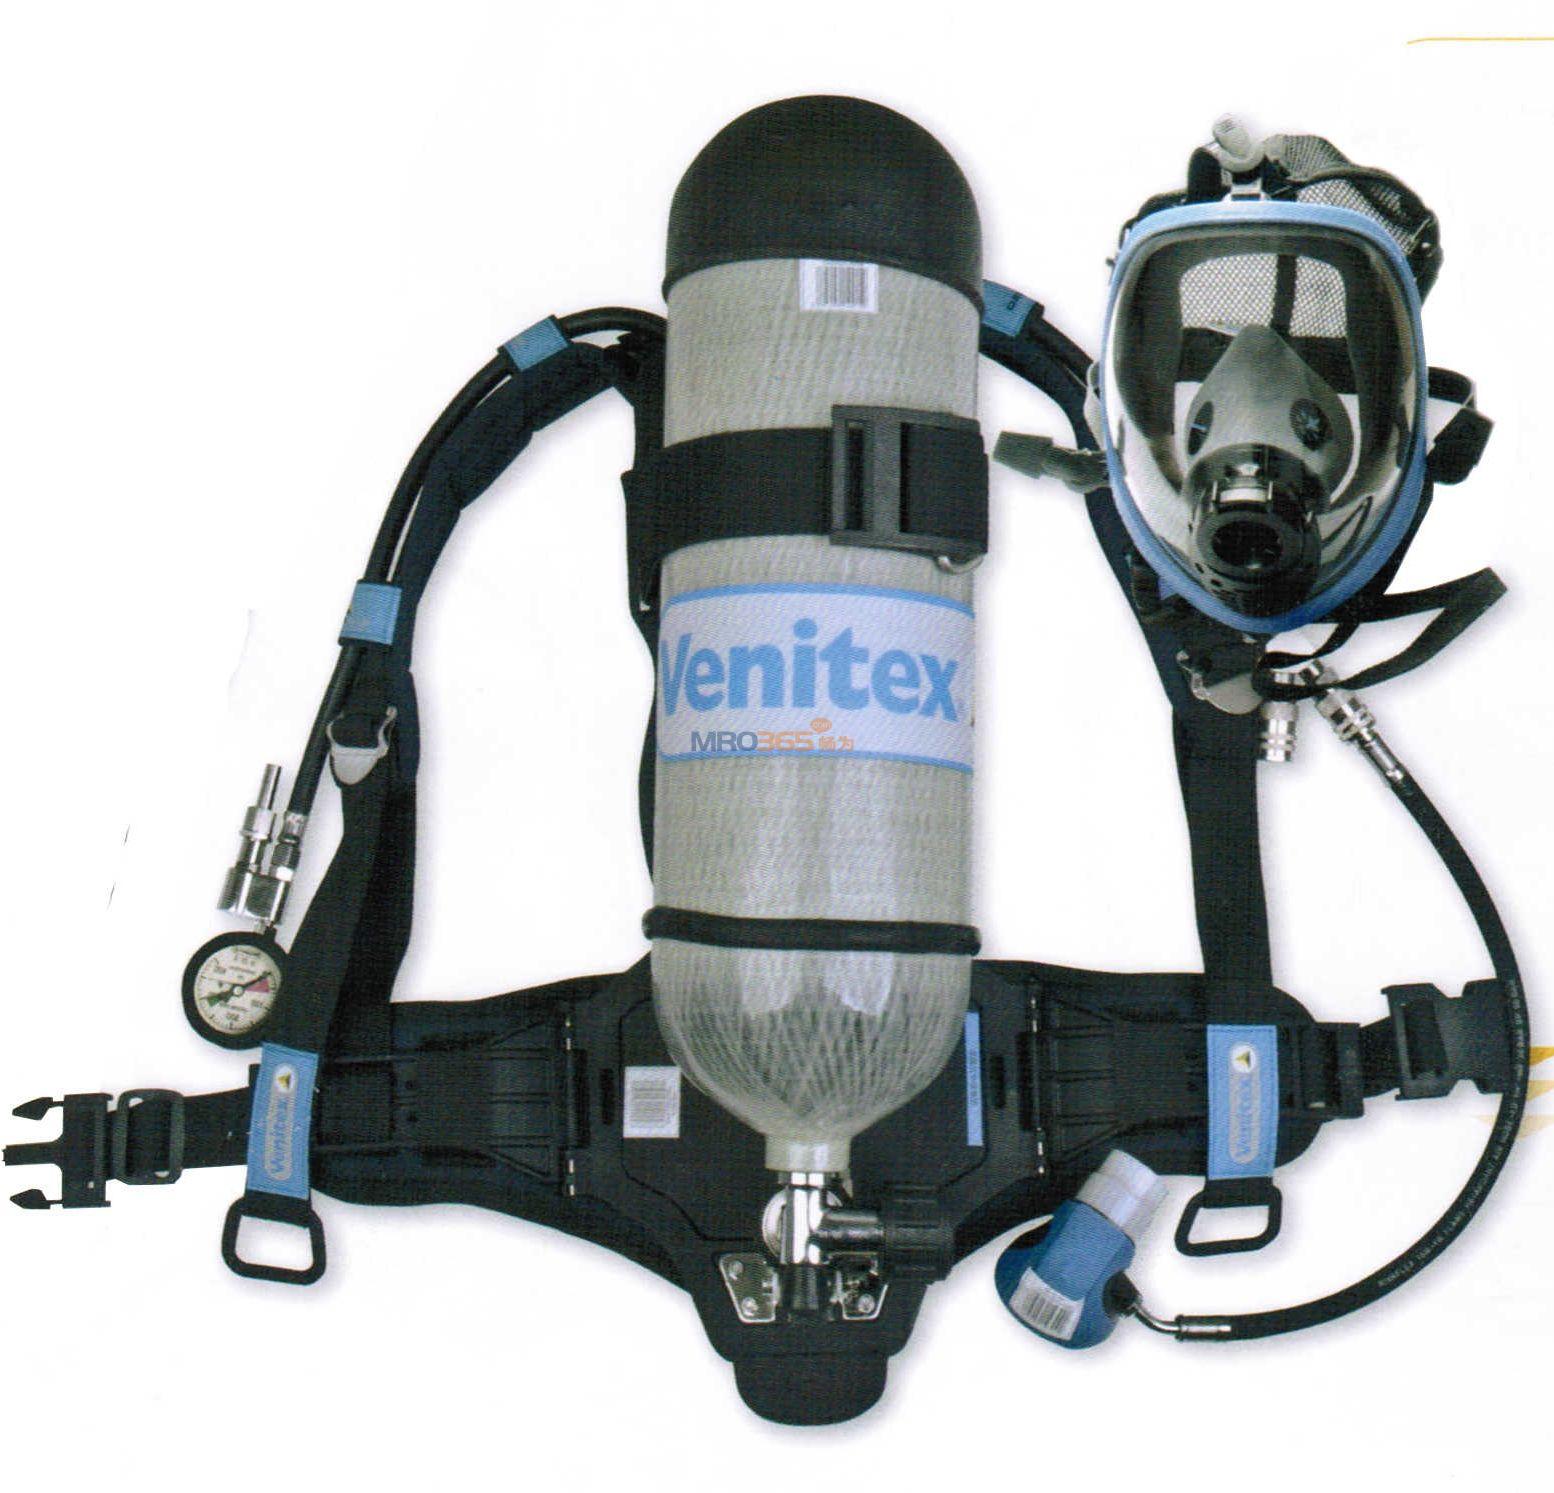 正压式空气呼吸器部件及性能介绍